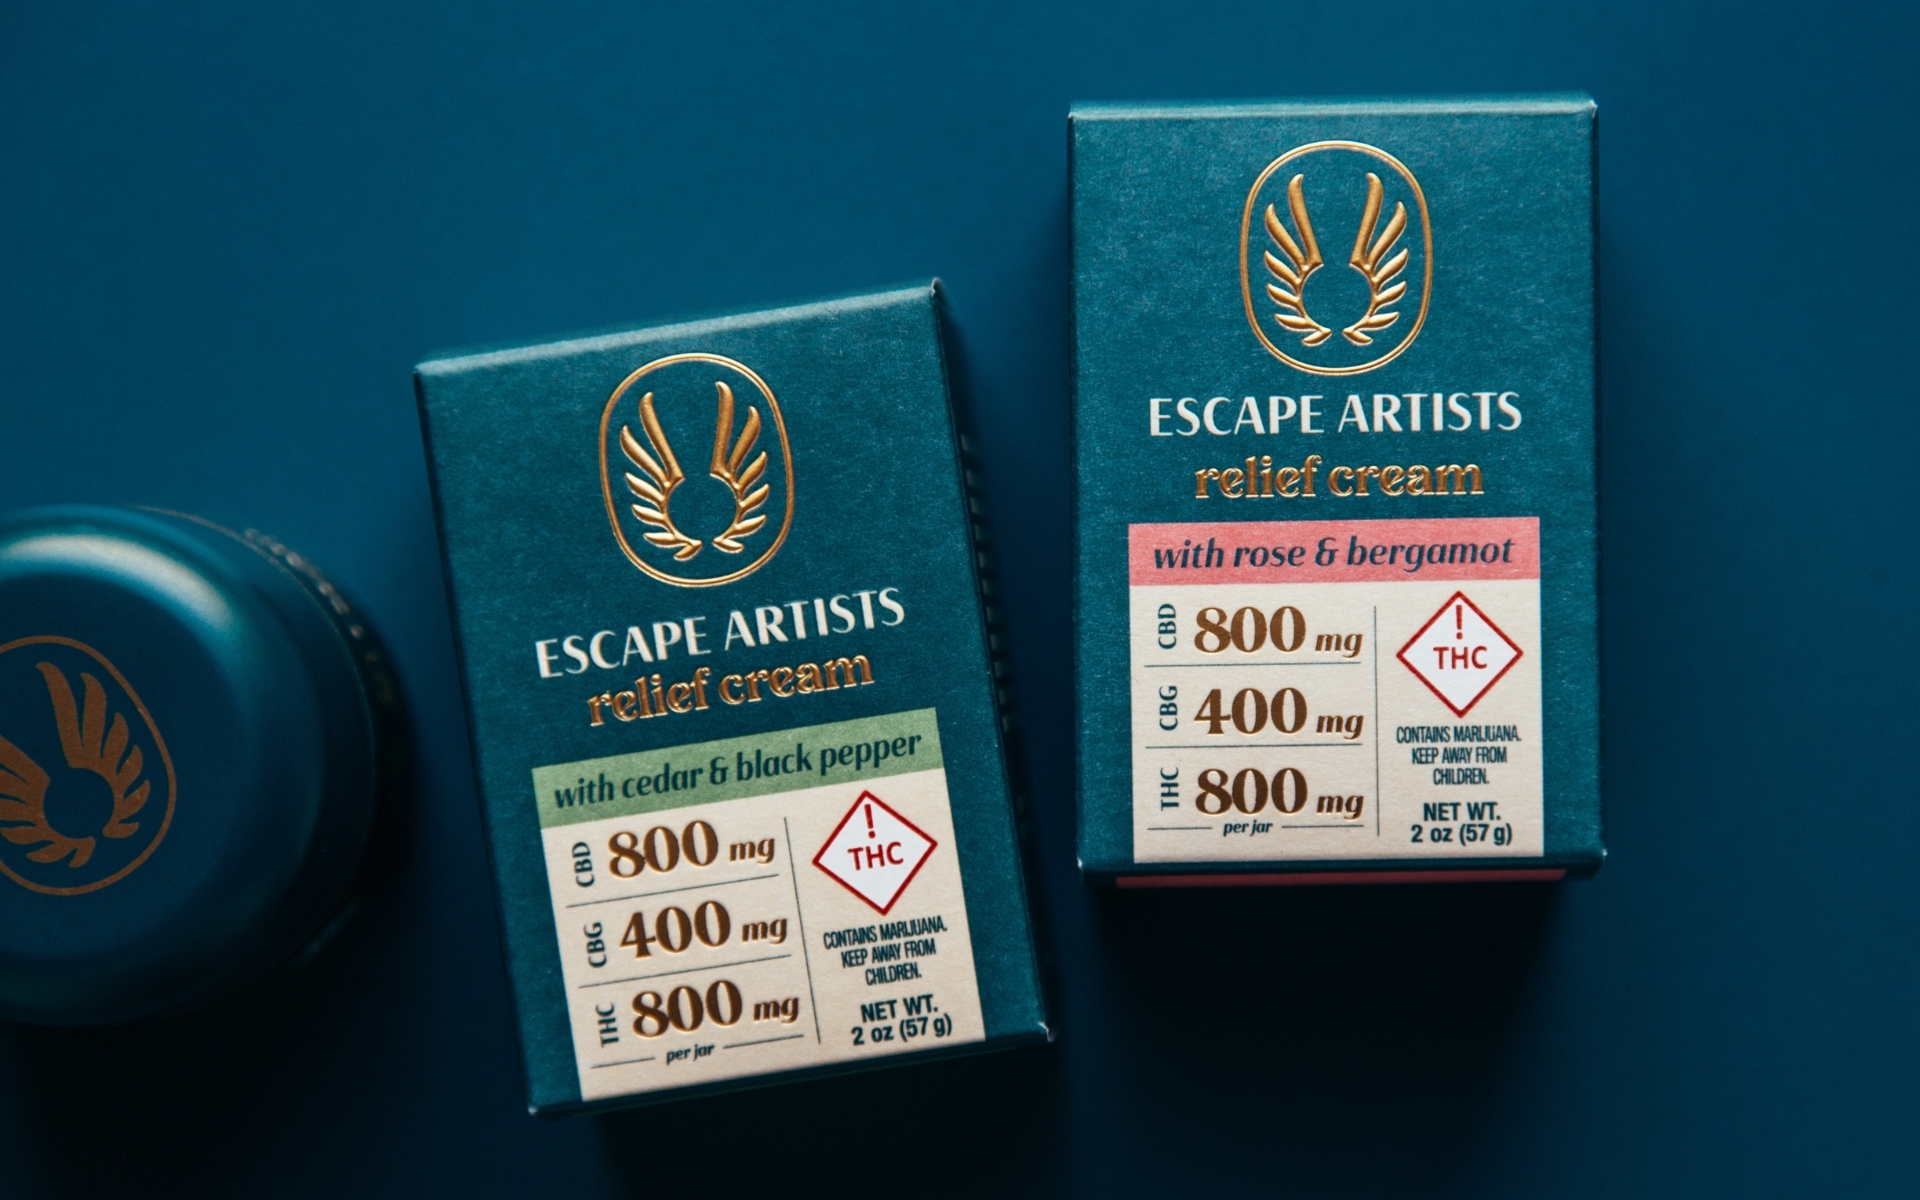 escape artists relief cream with cbg